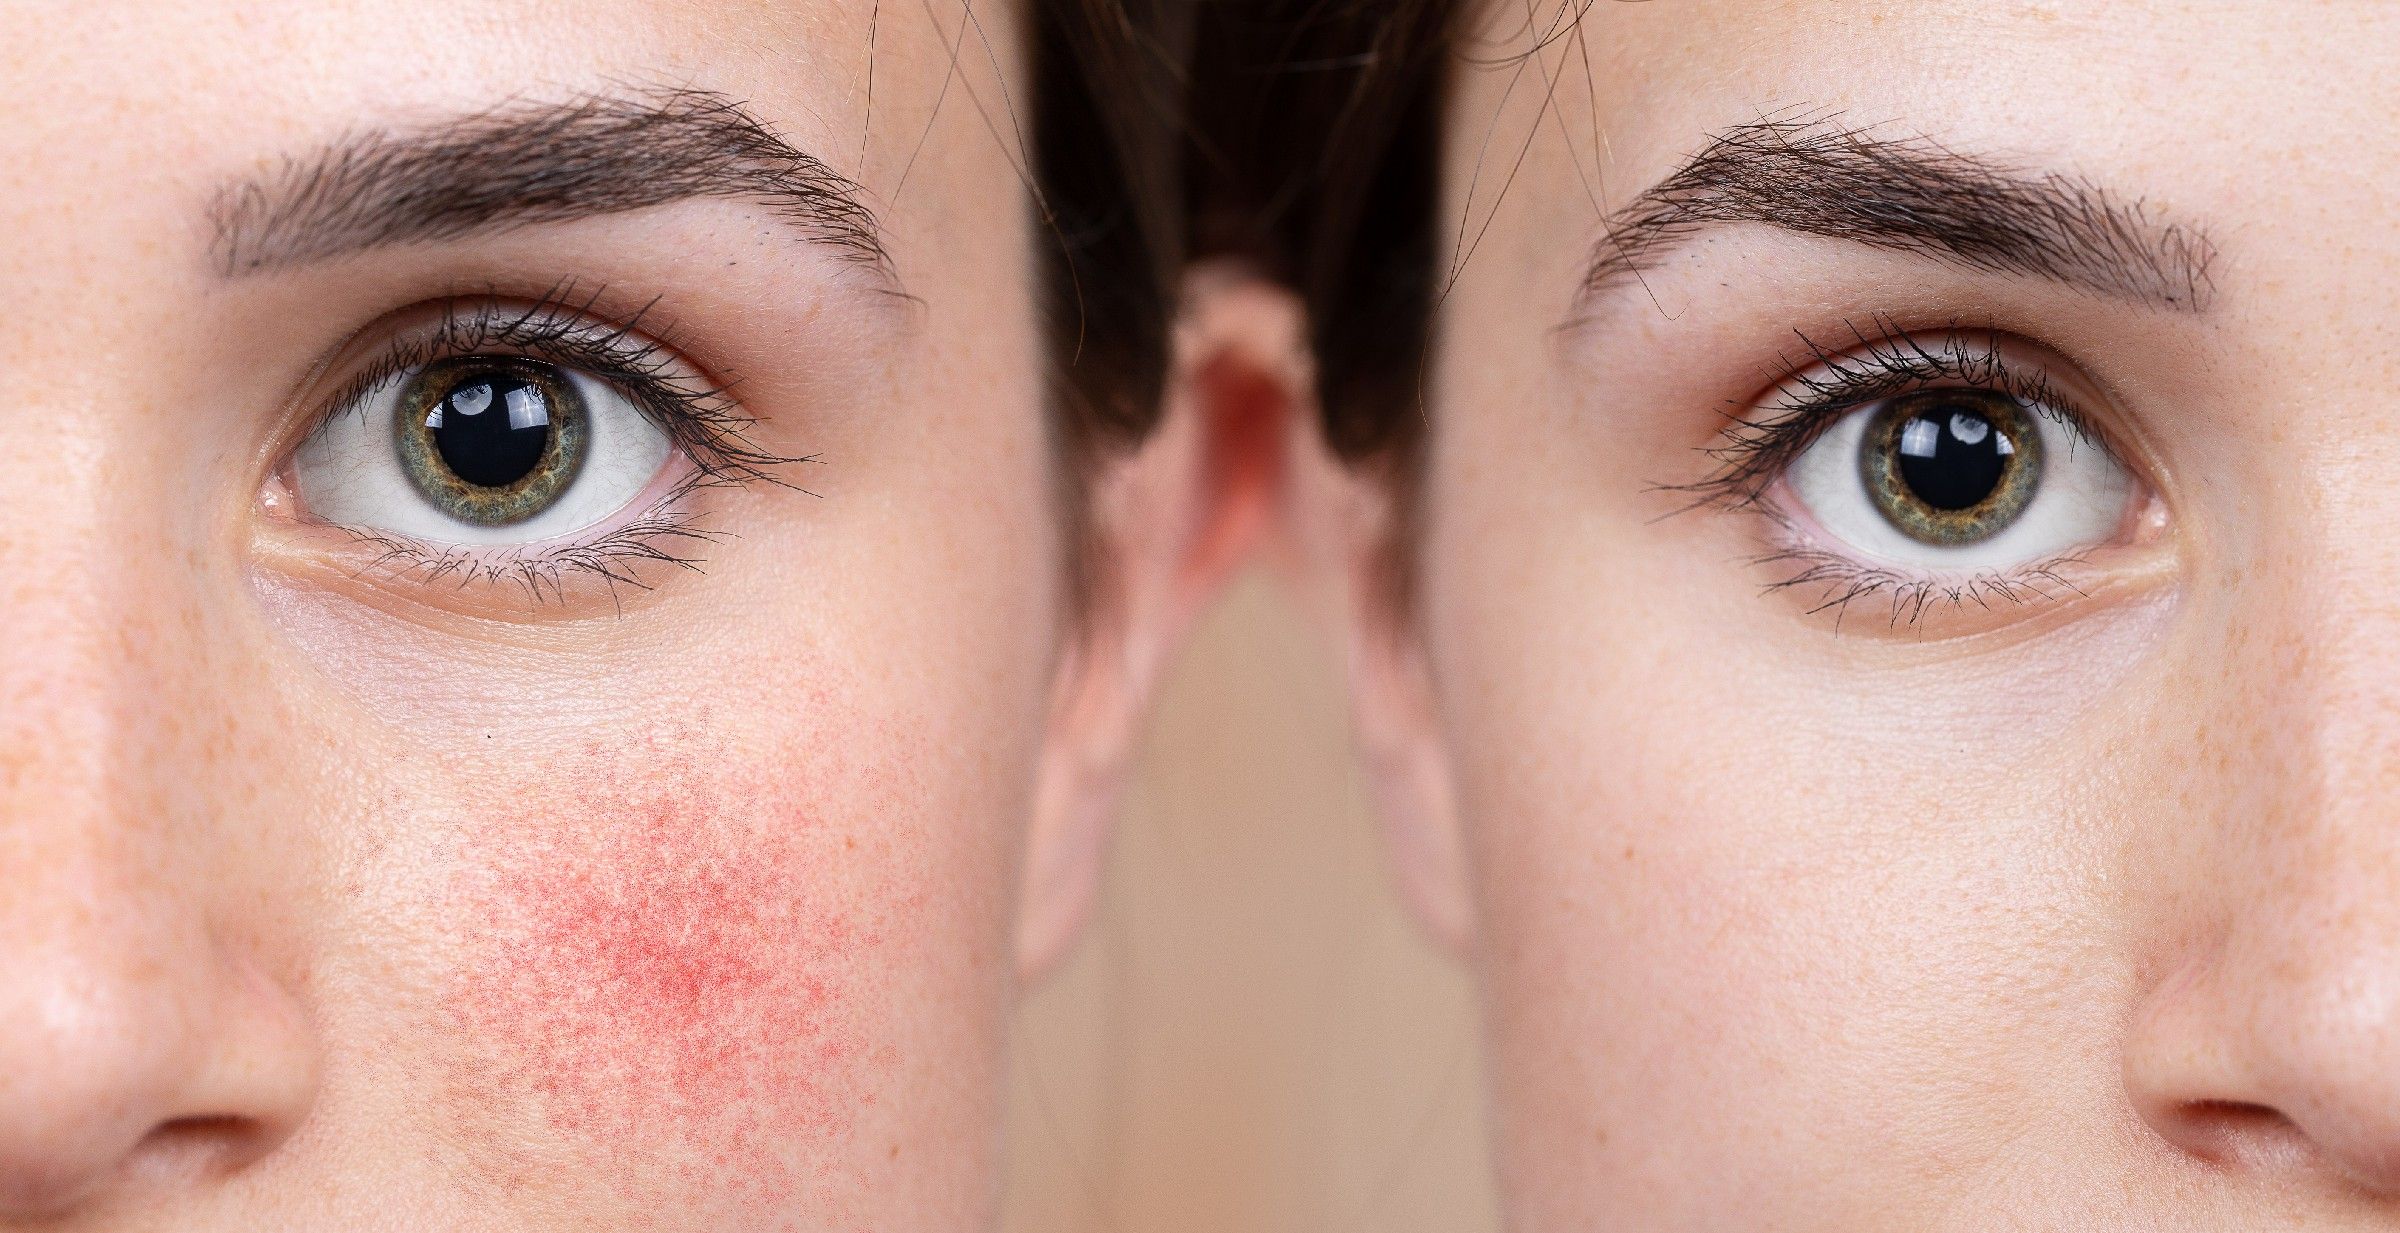 Egy makacs bőrprobléma: a rosacea